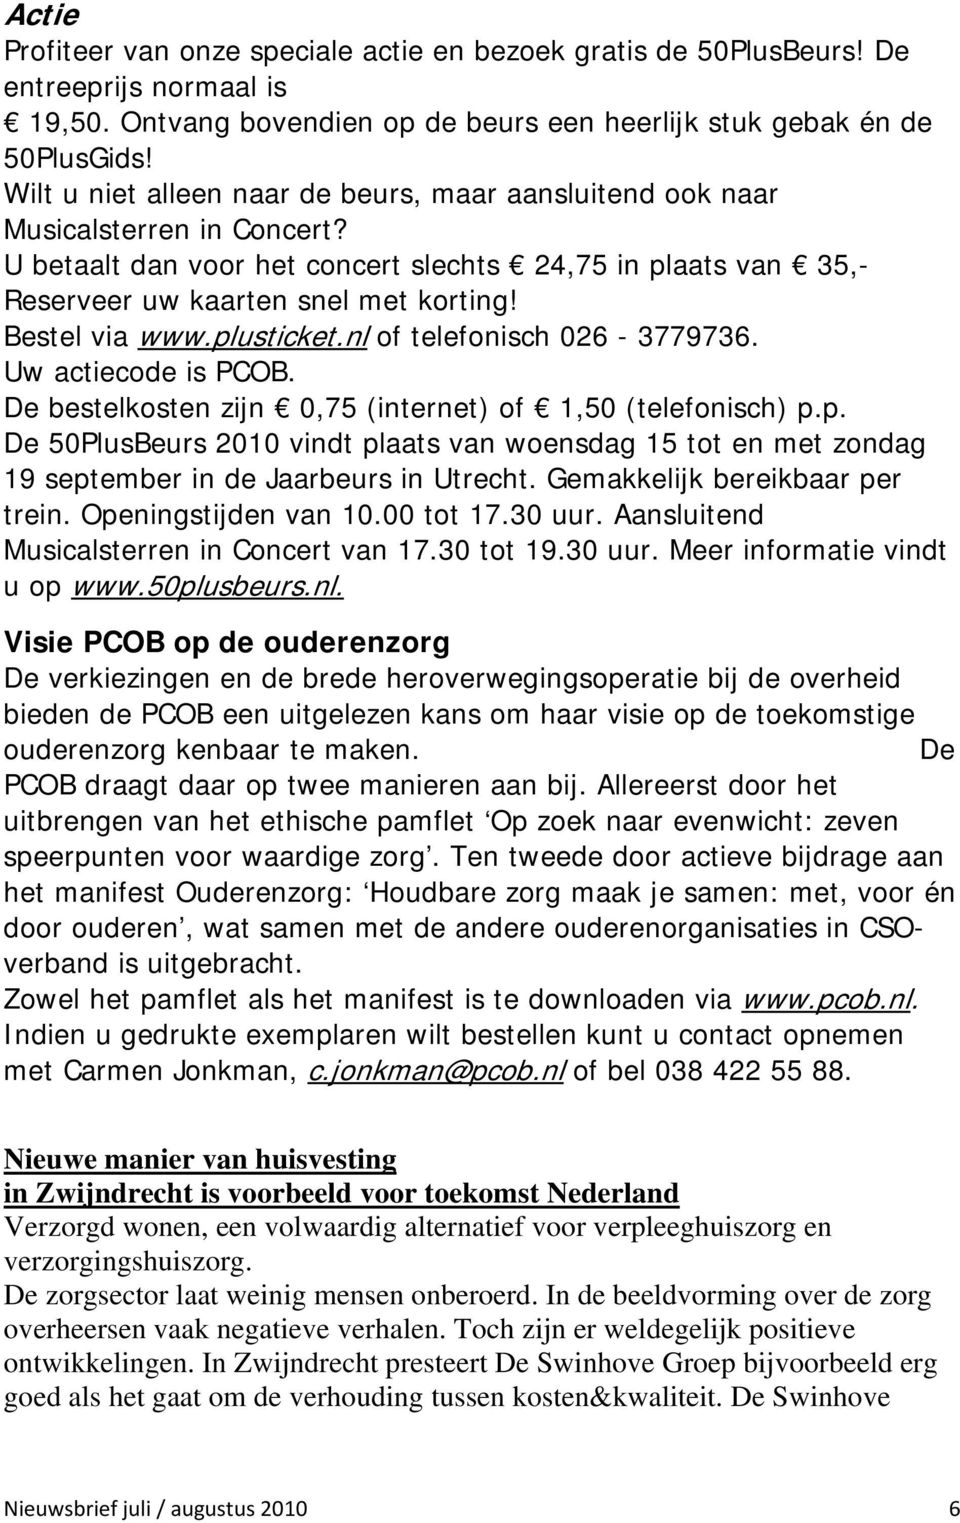 Bestel via www.plusticket.nl of telefonisch 026-3779736. Uw actiecode is PCOB. De bestelkosten zijn 0,75 (internet) of 1,50 (telefonisch) p.p. De 50PlusBeurs 2010 vindt plaats van woensdag 15 tot en met zondag 19 september in de Jaarbeurs in Utrecht.